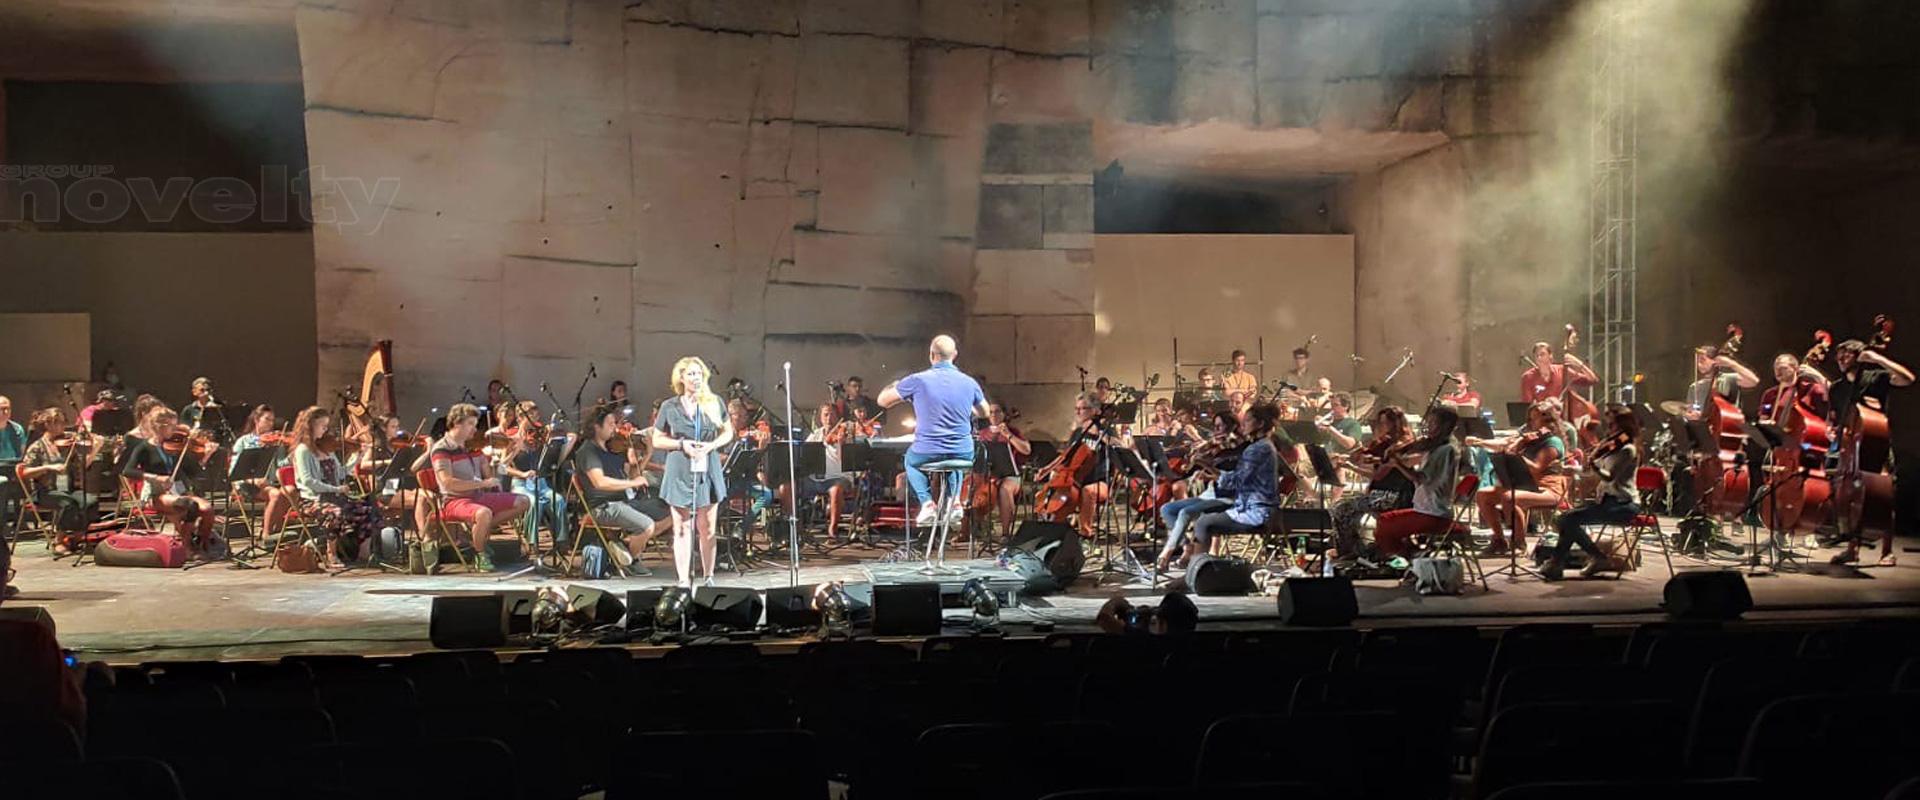 Visuel NOVELTY Azur sur le concert Andrea Bocelli au Festival Lacoste 